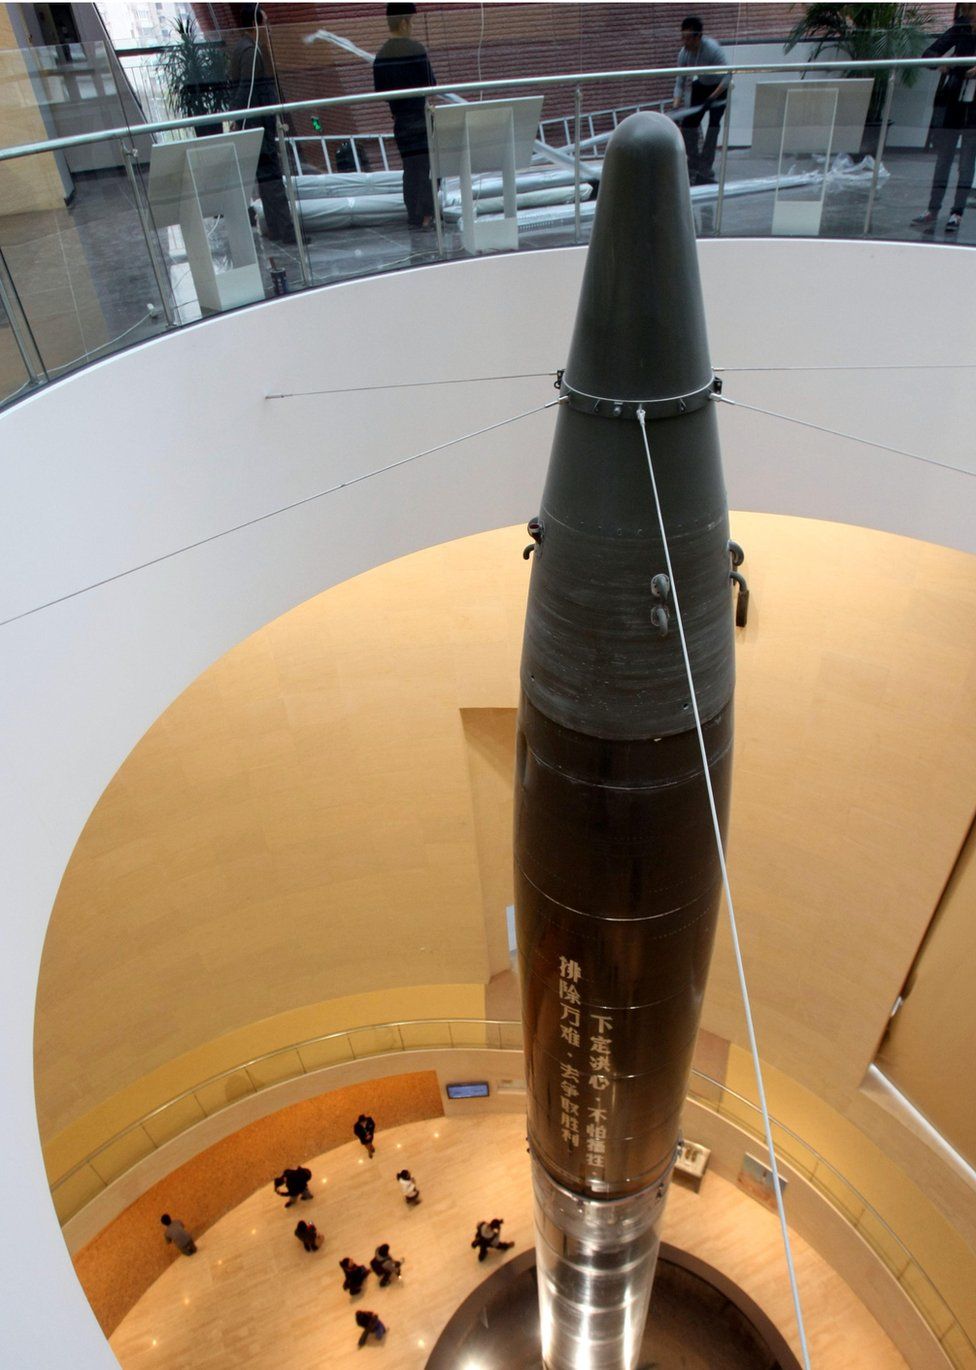 Un missile au musée Qian Xuesen à Shanghai